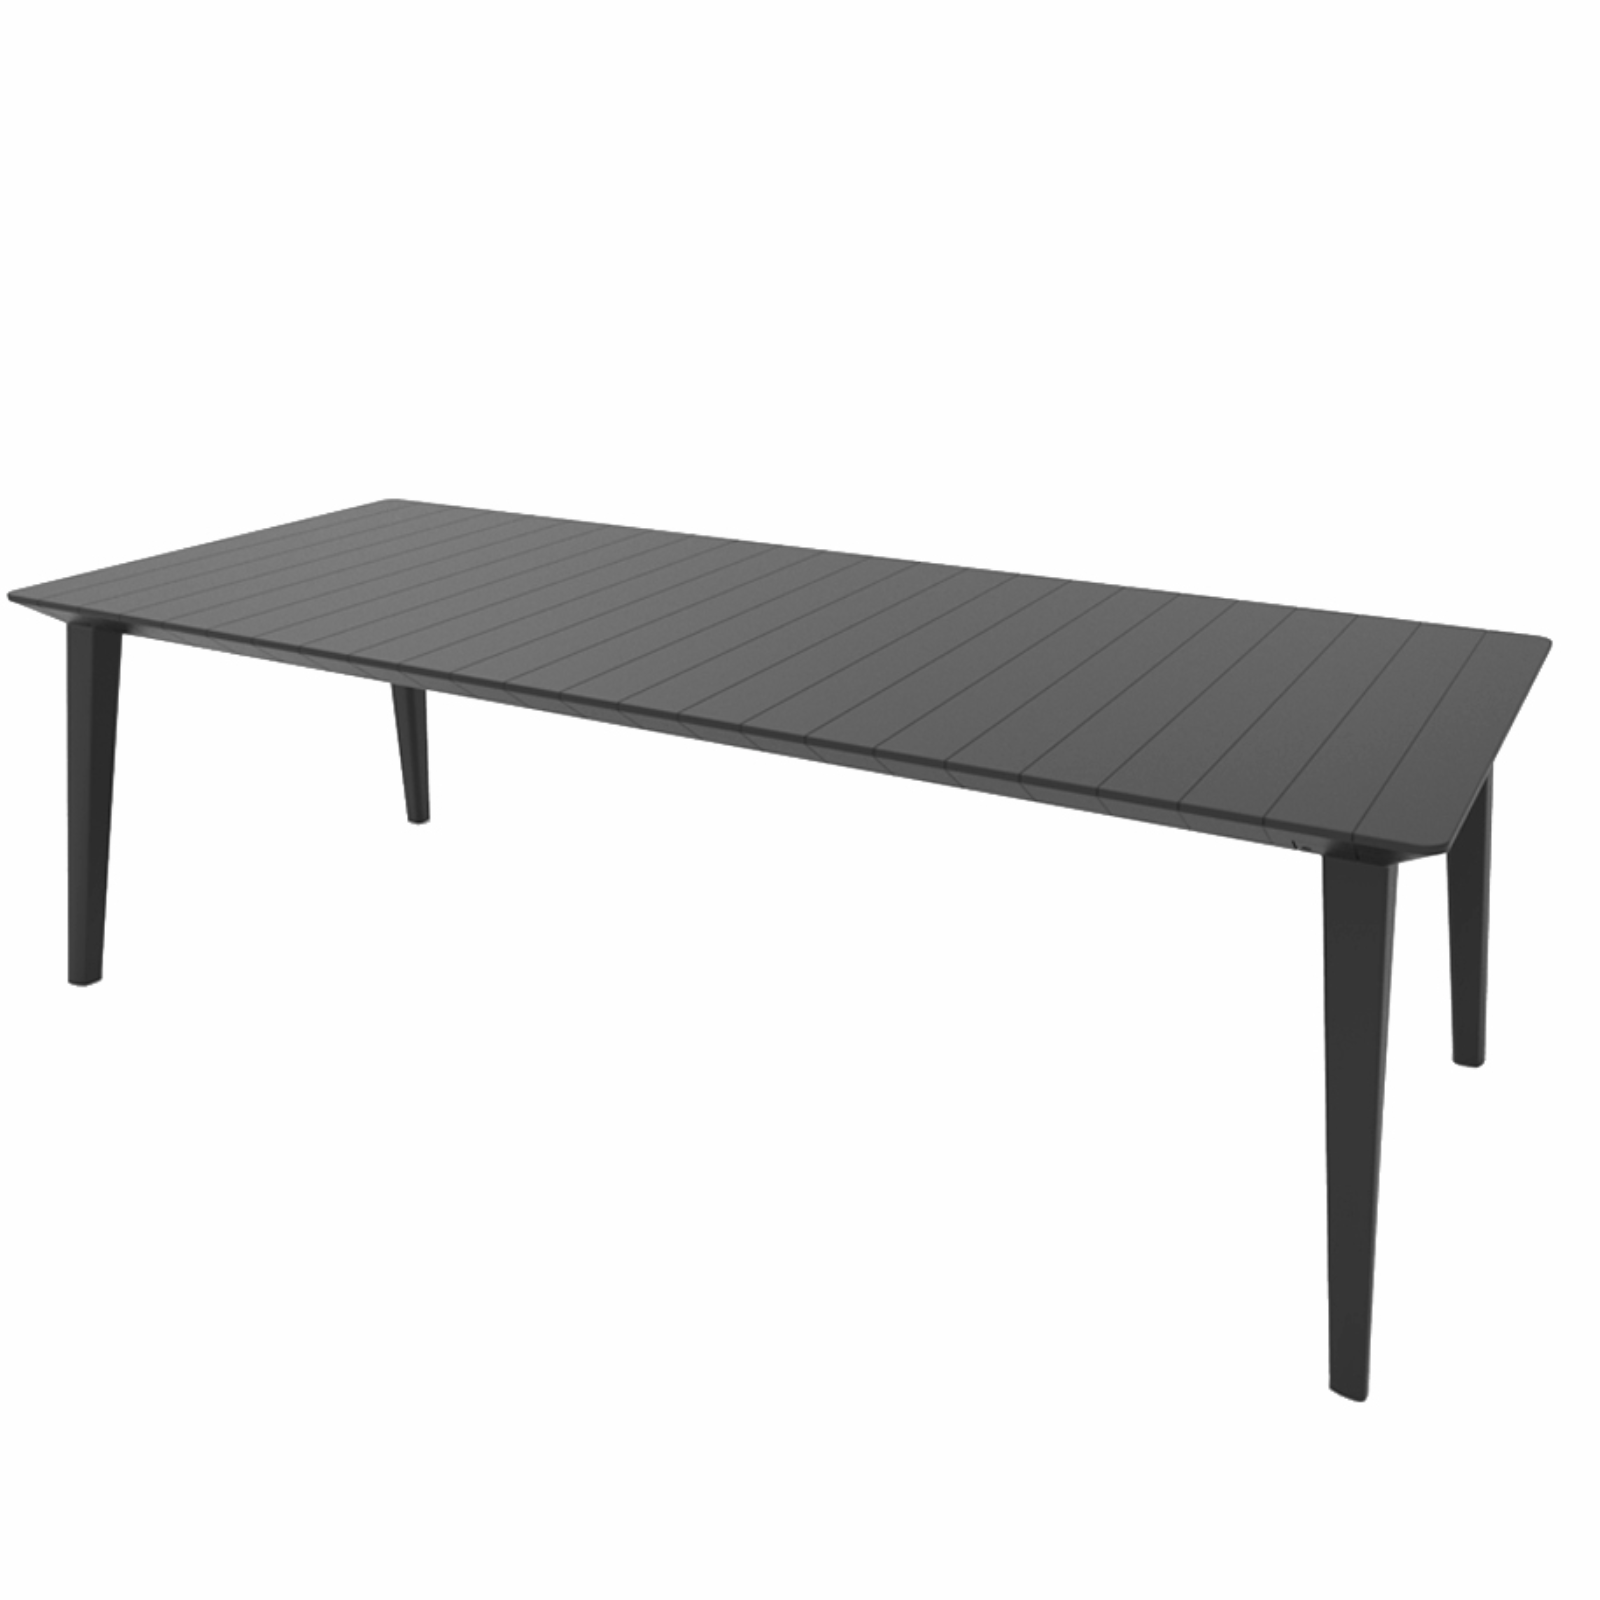 Tavolo da interno esterno allungabile estensibile nero con piano doghe effetto legno in resina antiurto